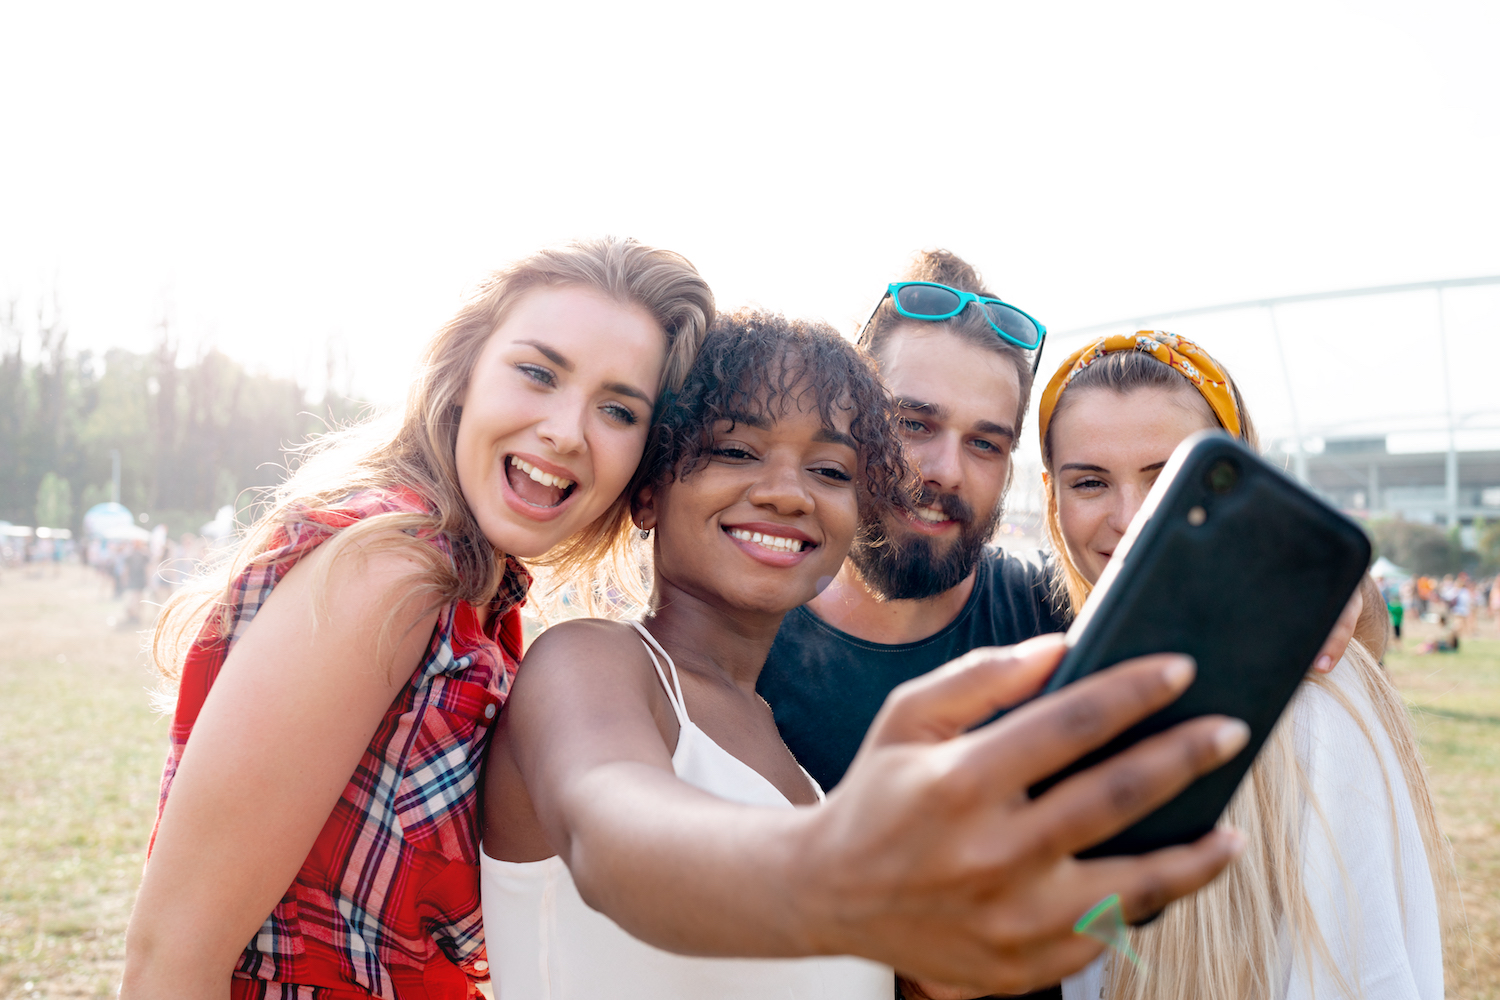 Ett kompisgäng på fyra personer tar ett gruppfot till sociala medier utomhus på en strand. Gruppen består av tre tjejer och en kille med varierande etnisk bakgrund.